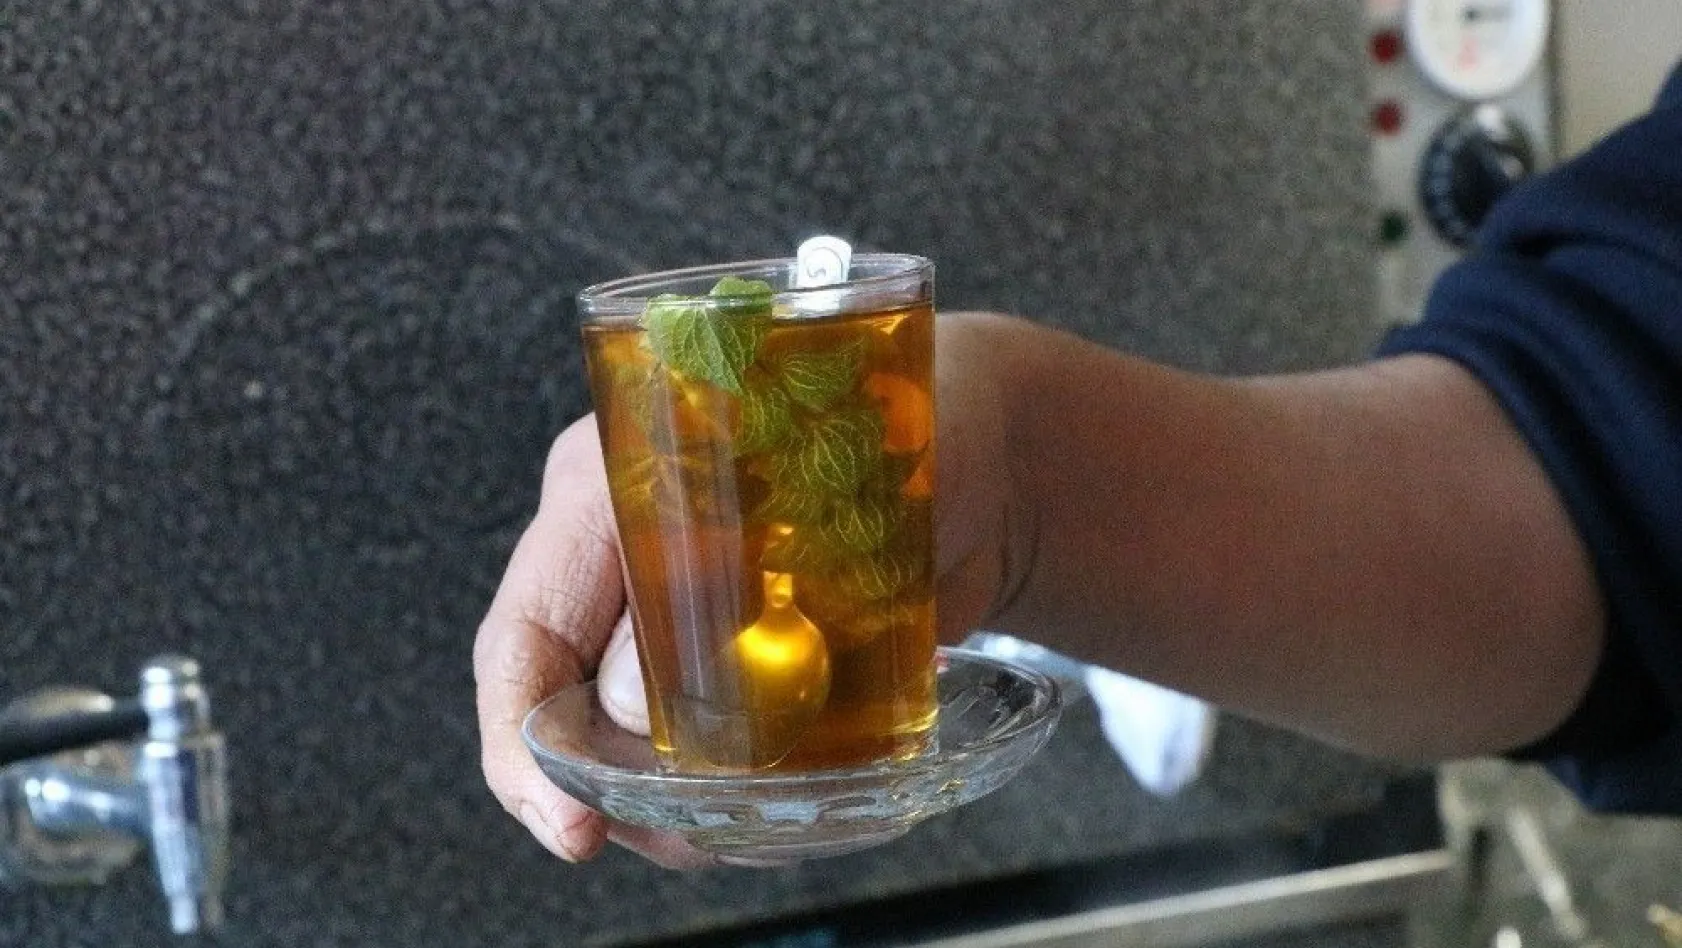 Kış hastalıklarına karşı özel çay: 'Bomba'
